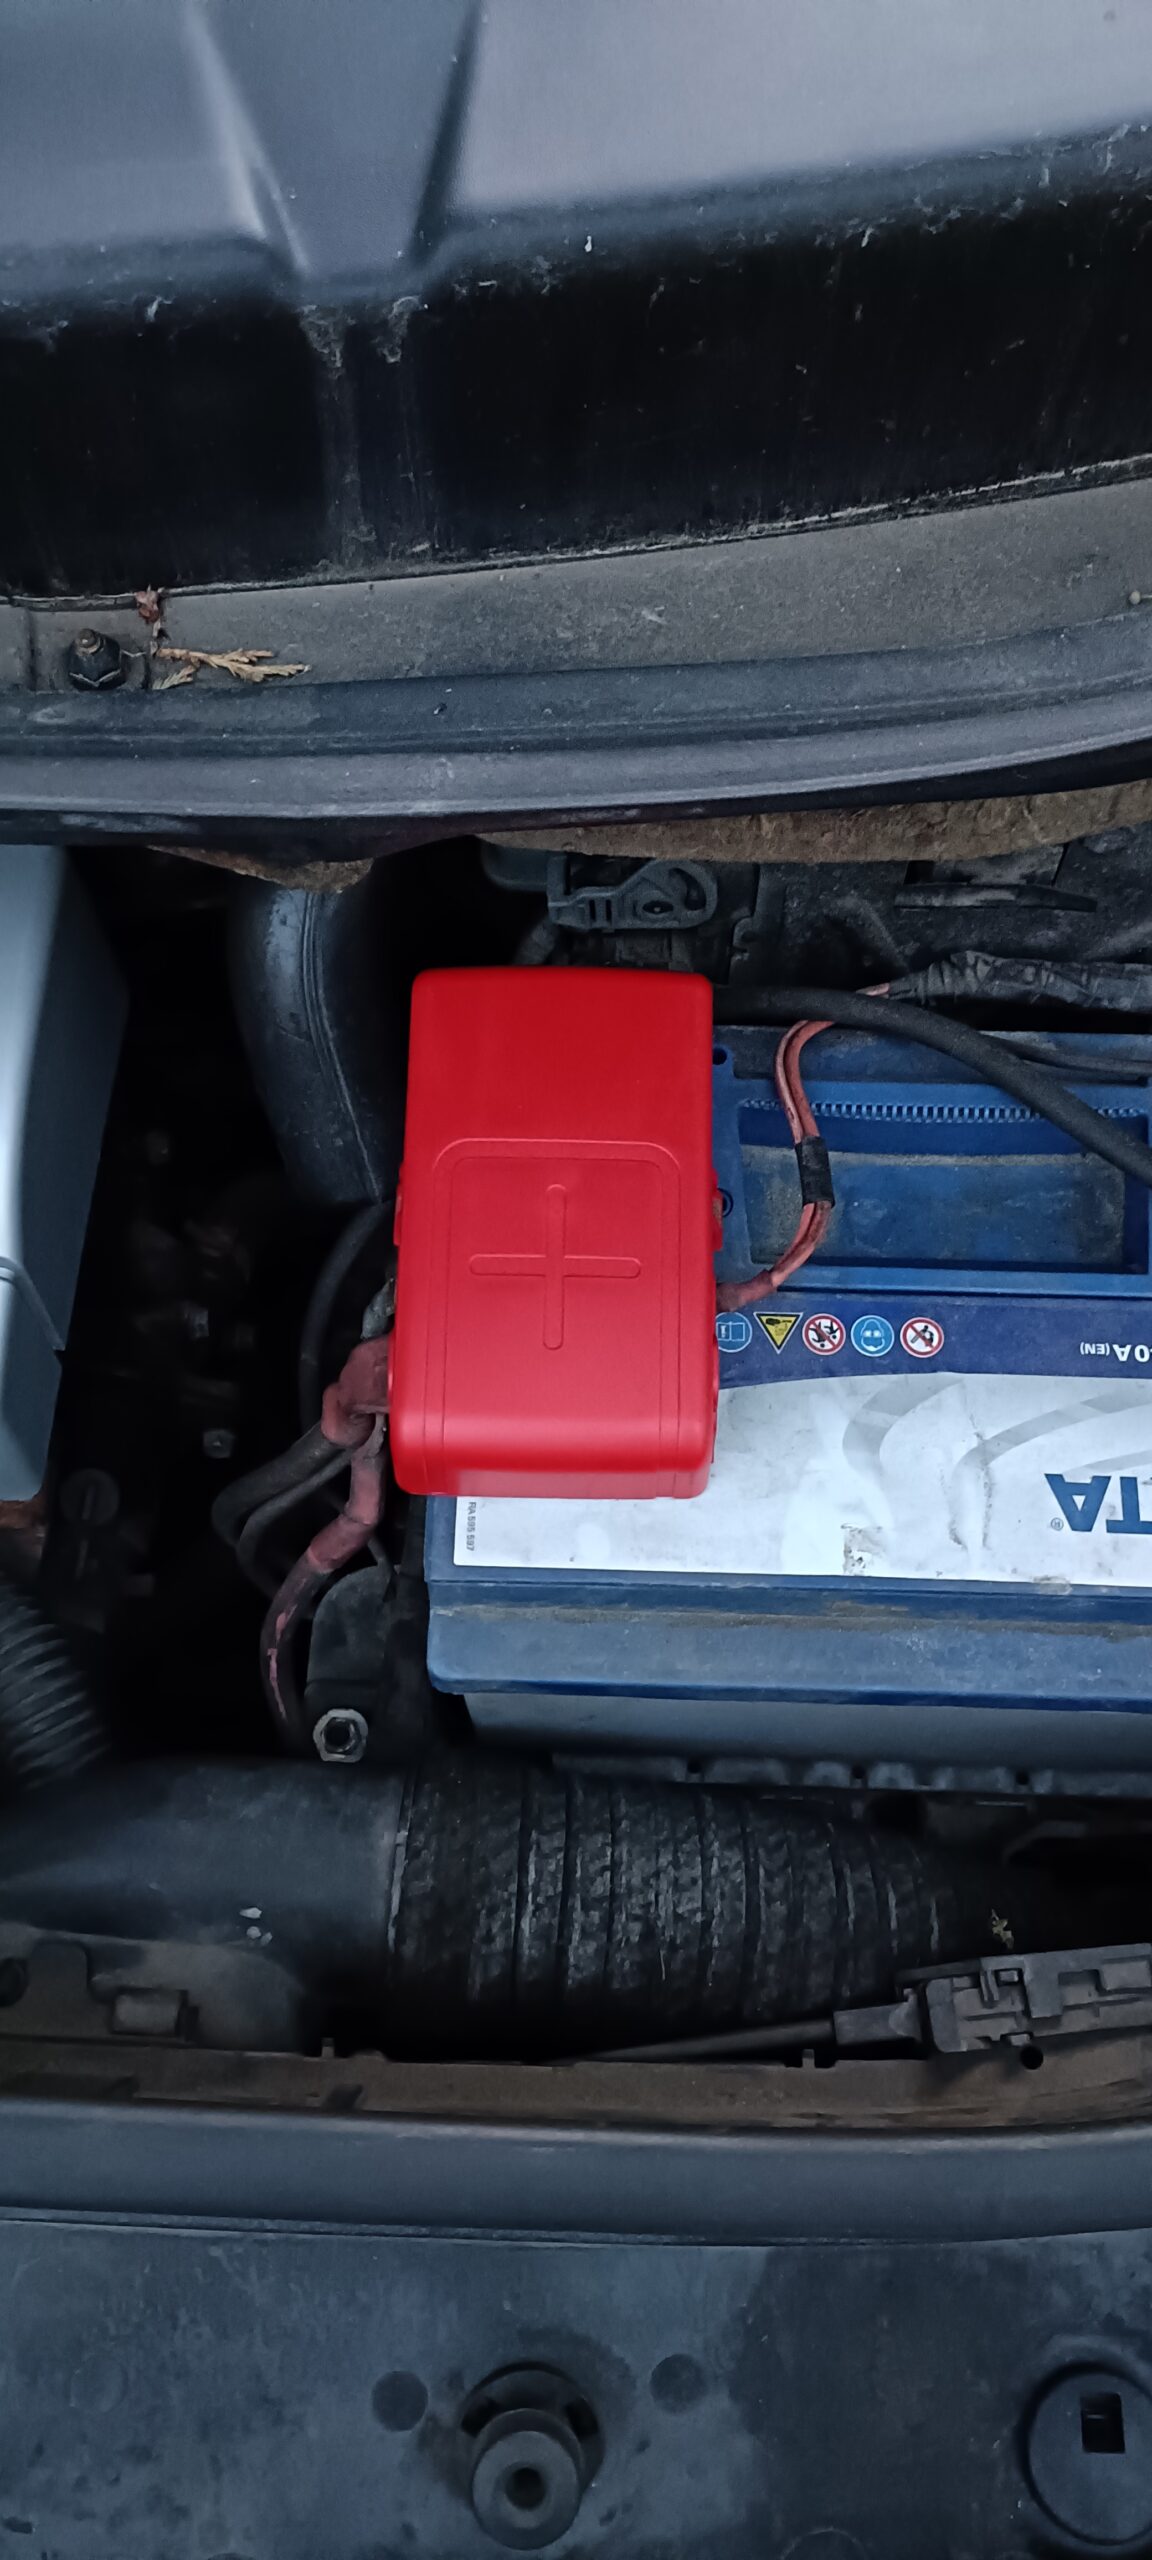 Batteriepolabdeckung Renault Scenic II - Warum verlegen Werkstätten ständig  Dinge? - Das Autotagebuch